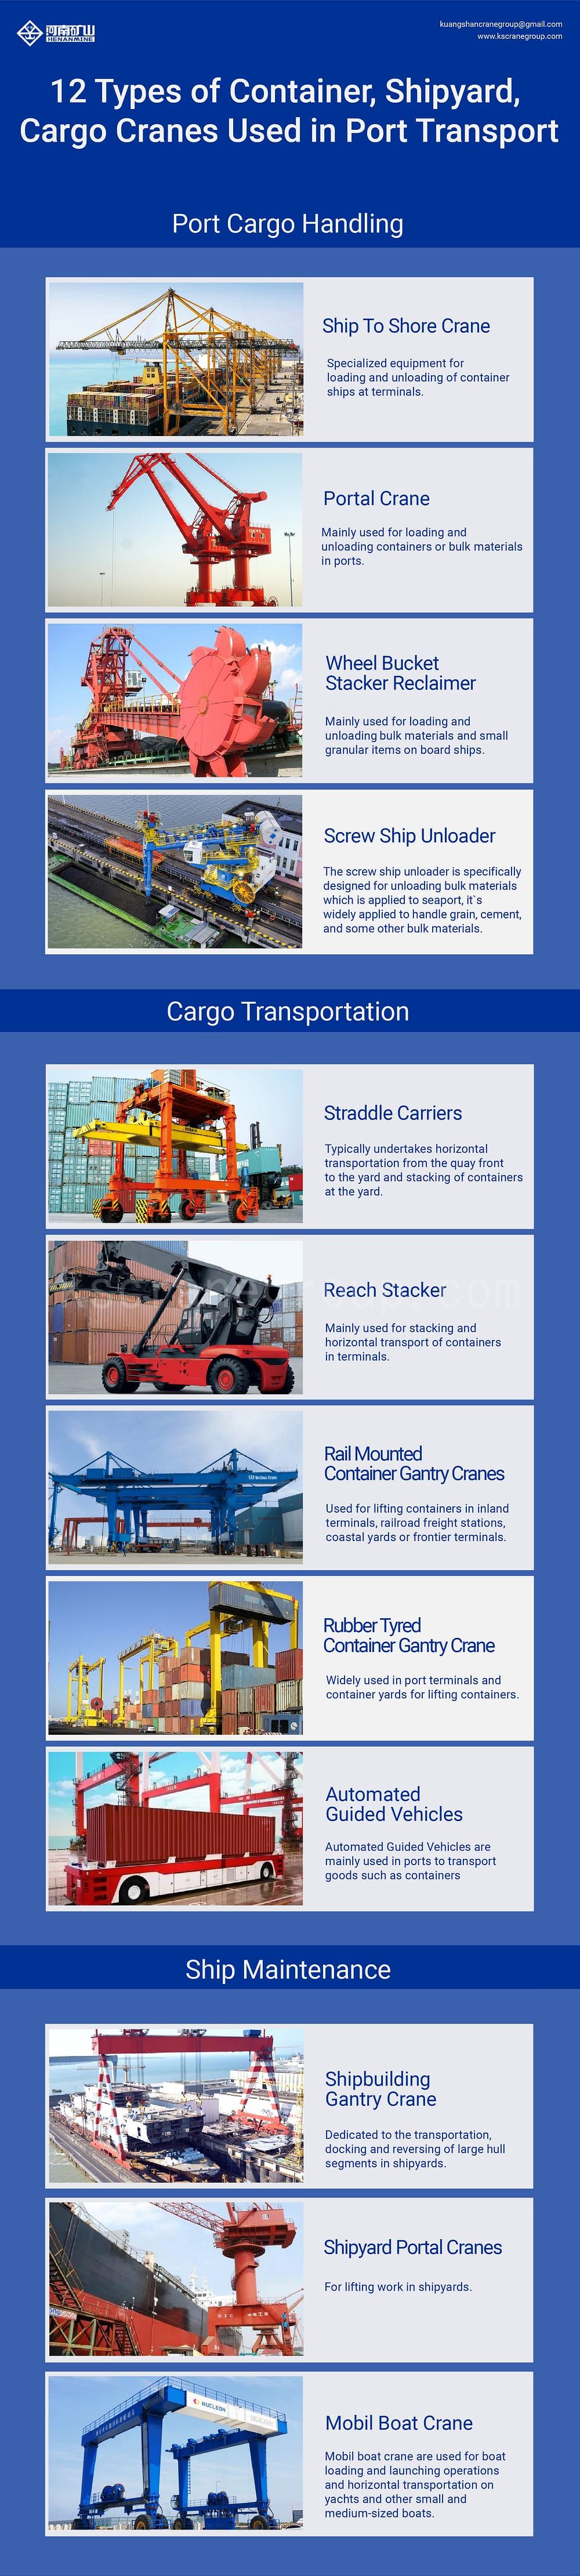 港口运输中使用的集装箱、船厂、货物起重机的类型